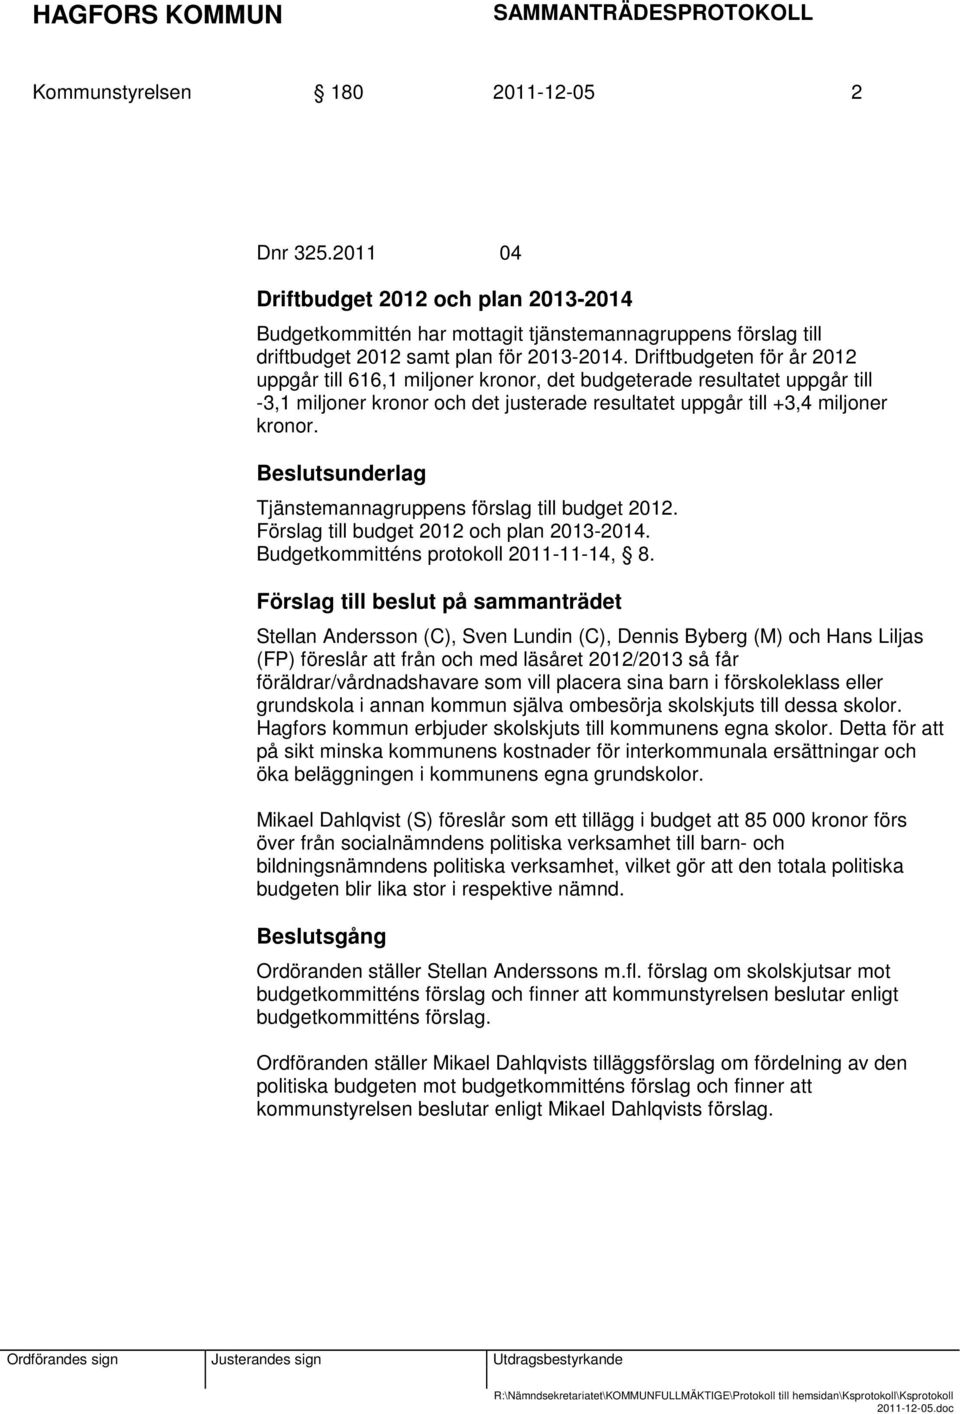 Tjänstemannagruppens förslag till budget 2012. Förslag till budget 2012 och plan 2013-2014. Budgetkommitténs protokoll 2011-11-14, 8.